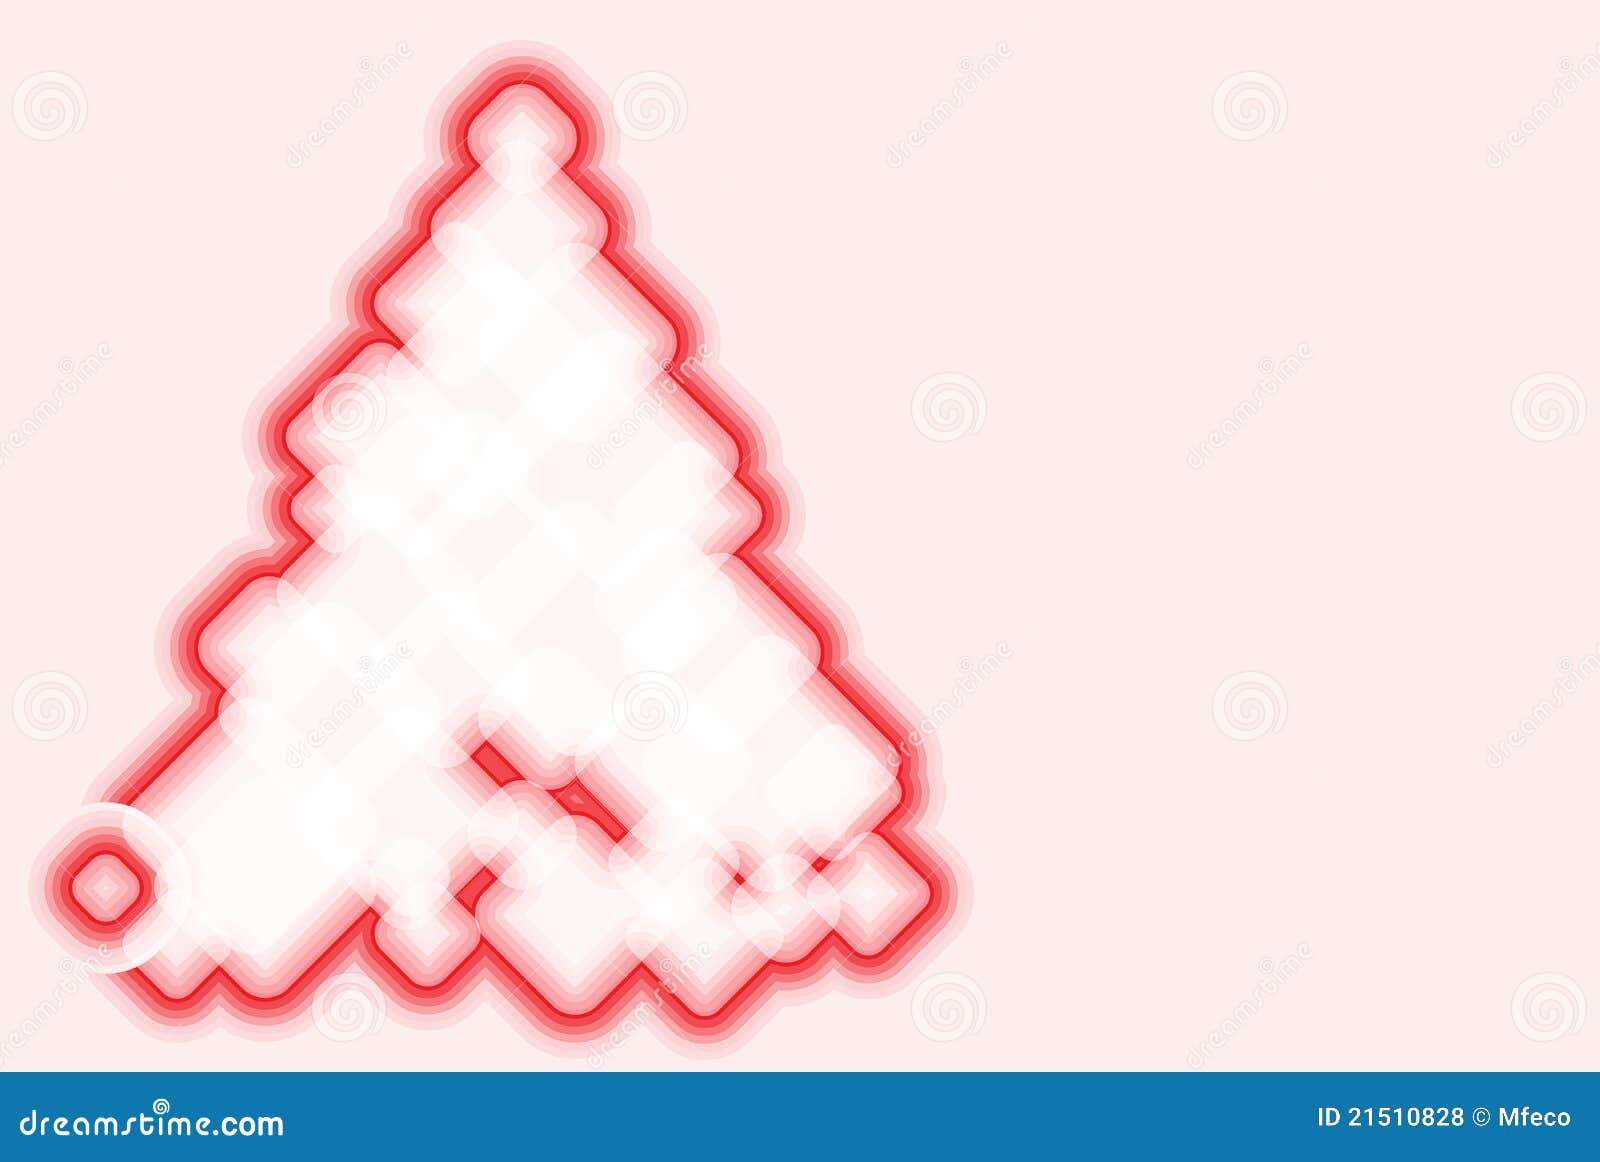 Abstracte Kerstmisboom voor uw advertentietekst